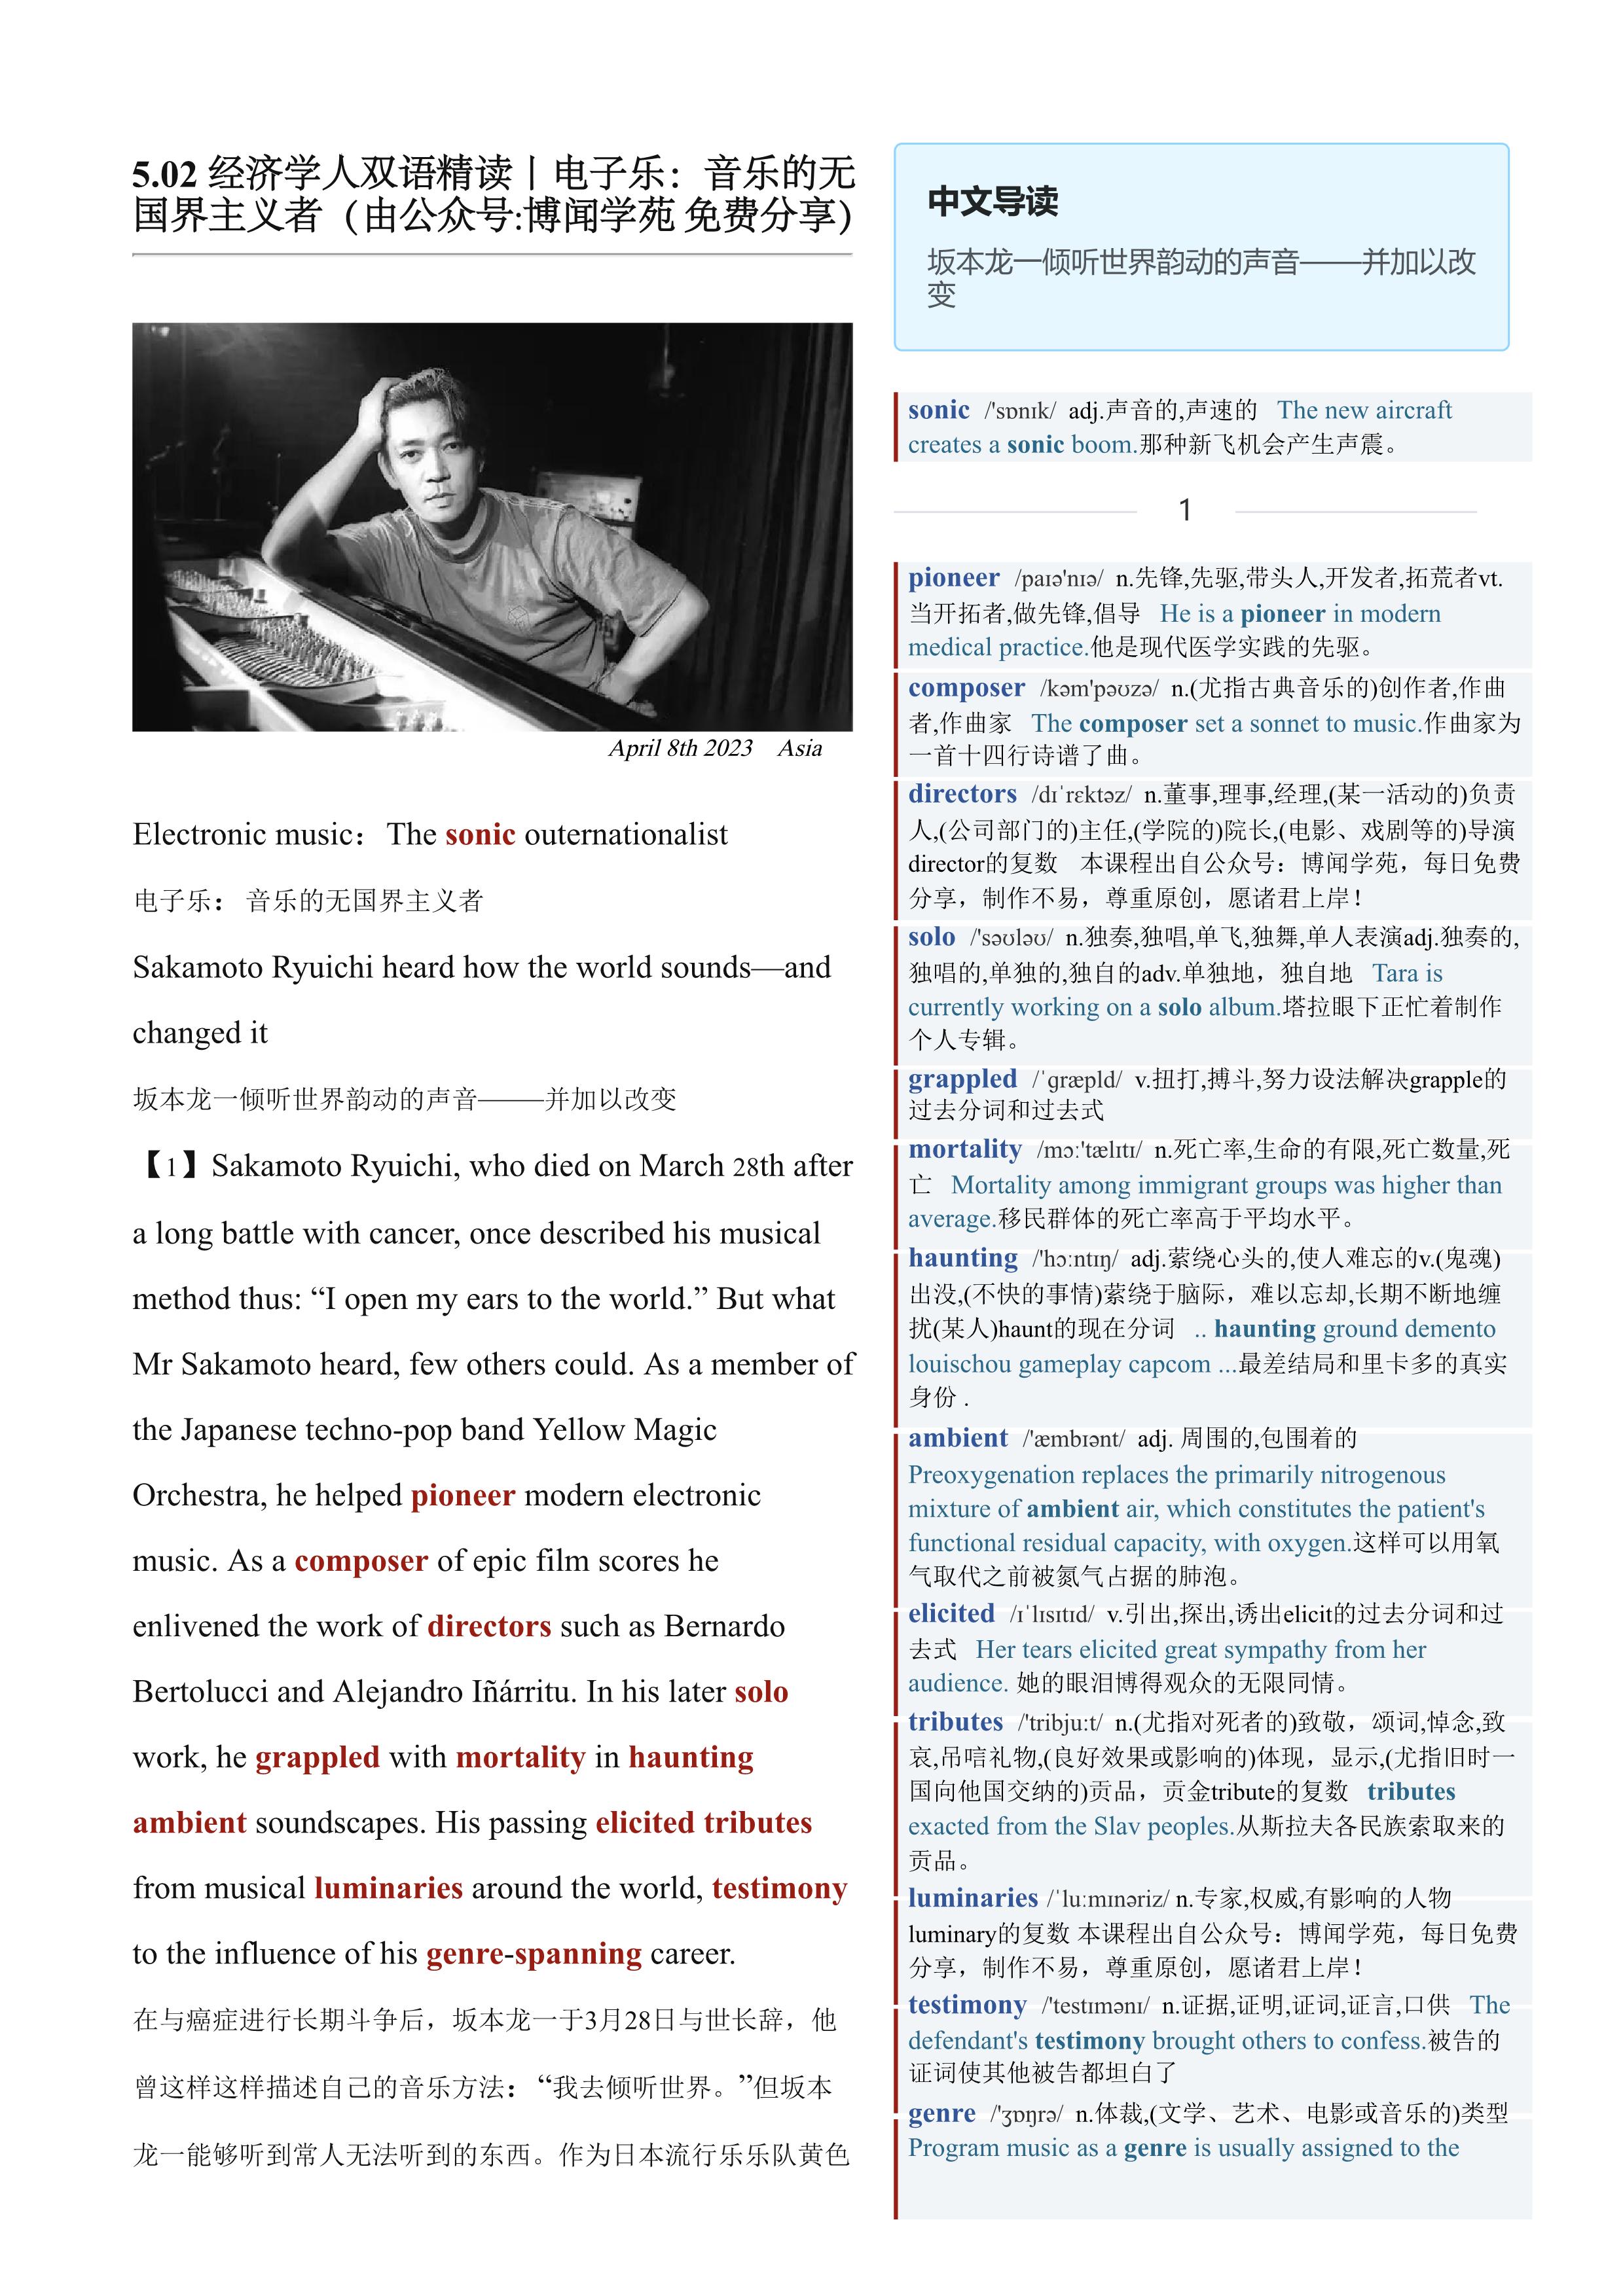 2023.05.02 经济学人双语精读丨电子乐：音乐的无国界主义者 (.PDF/DOC/MP3)